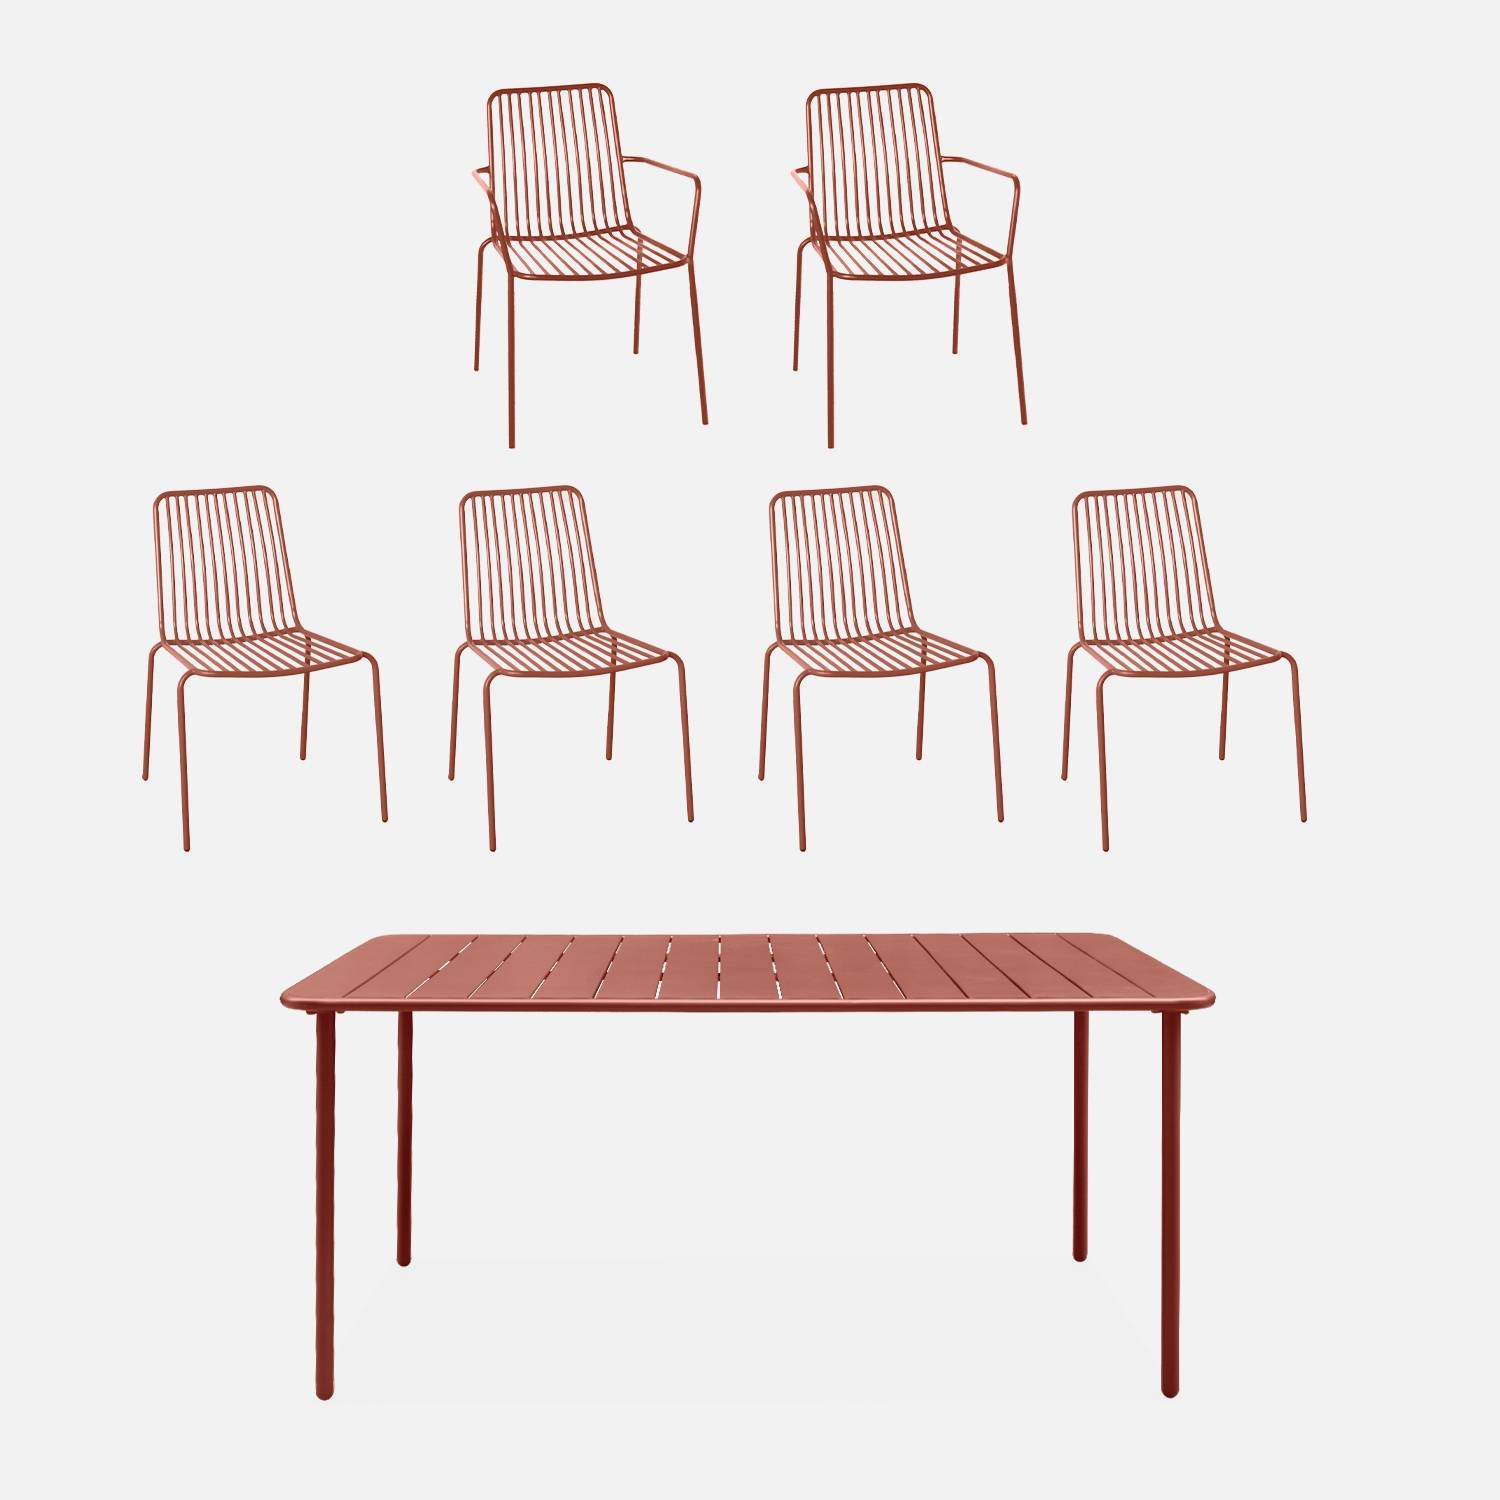 Table de jardin + 4 chaises, 2 fauteuils terracotta I sweeek